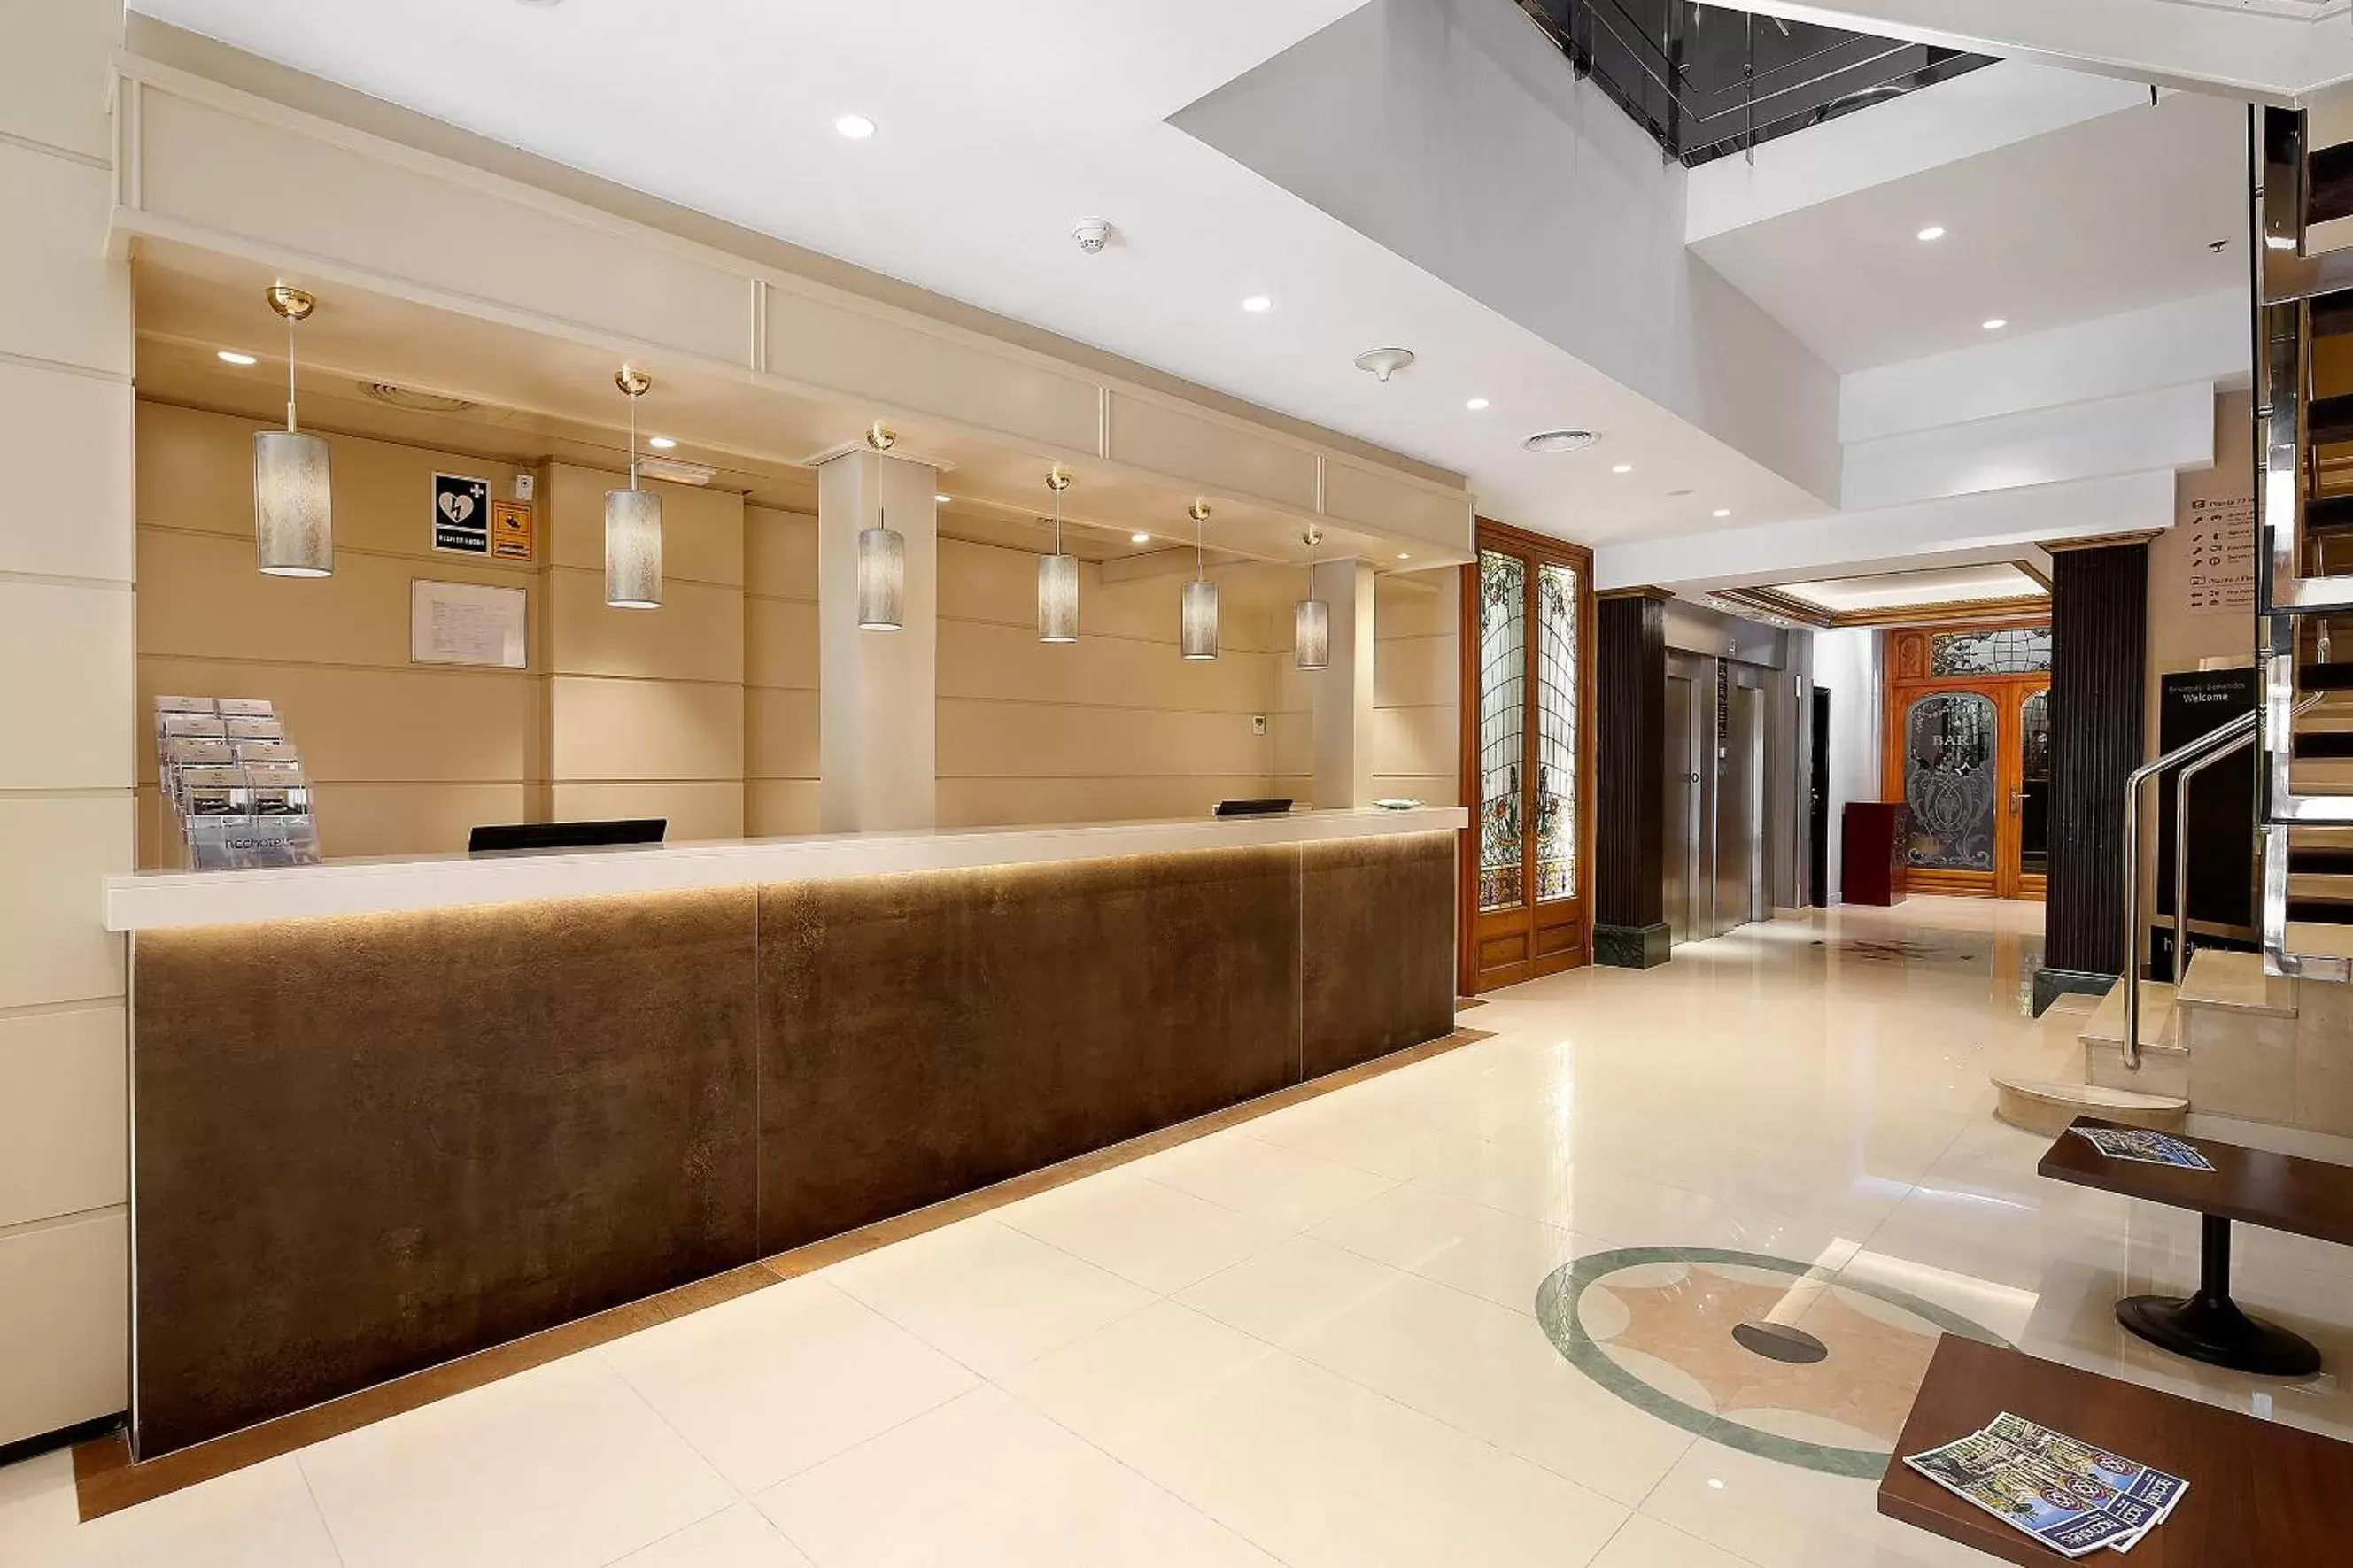 Lobby or reception, Lobby/Reception in HCC Regente